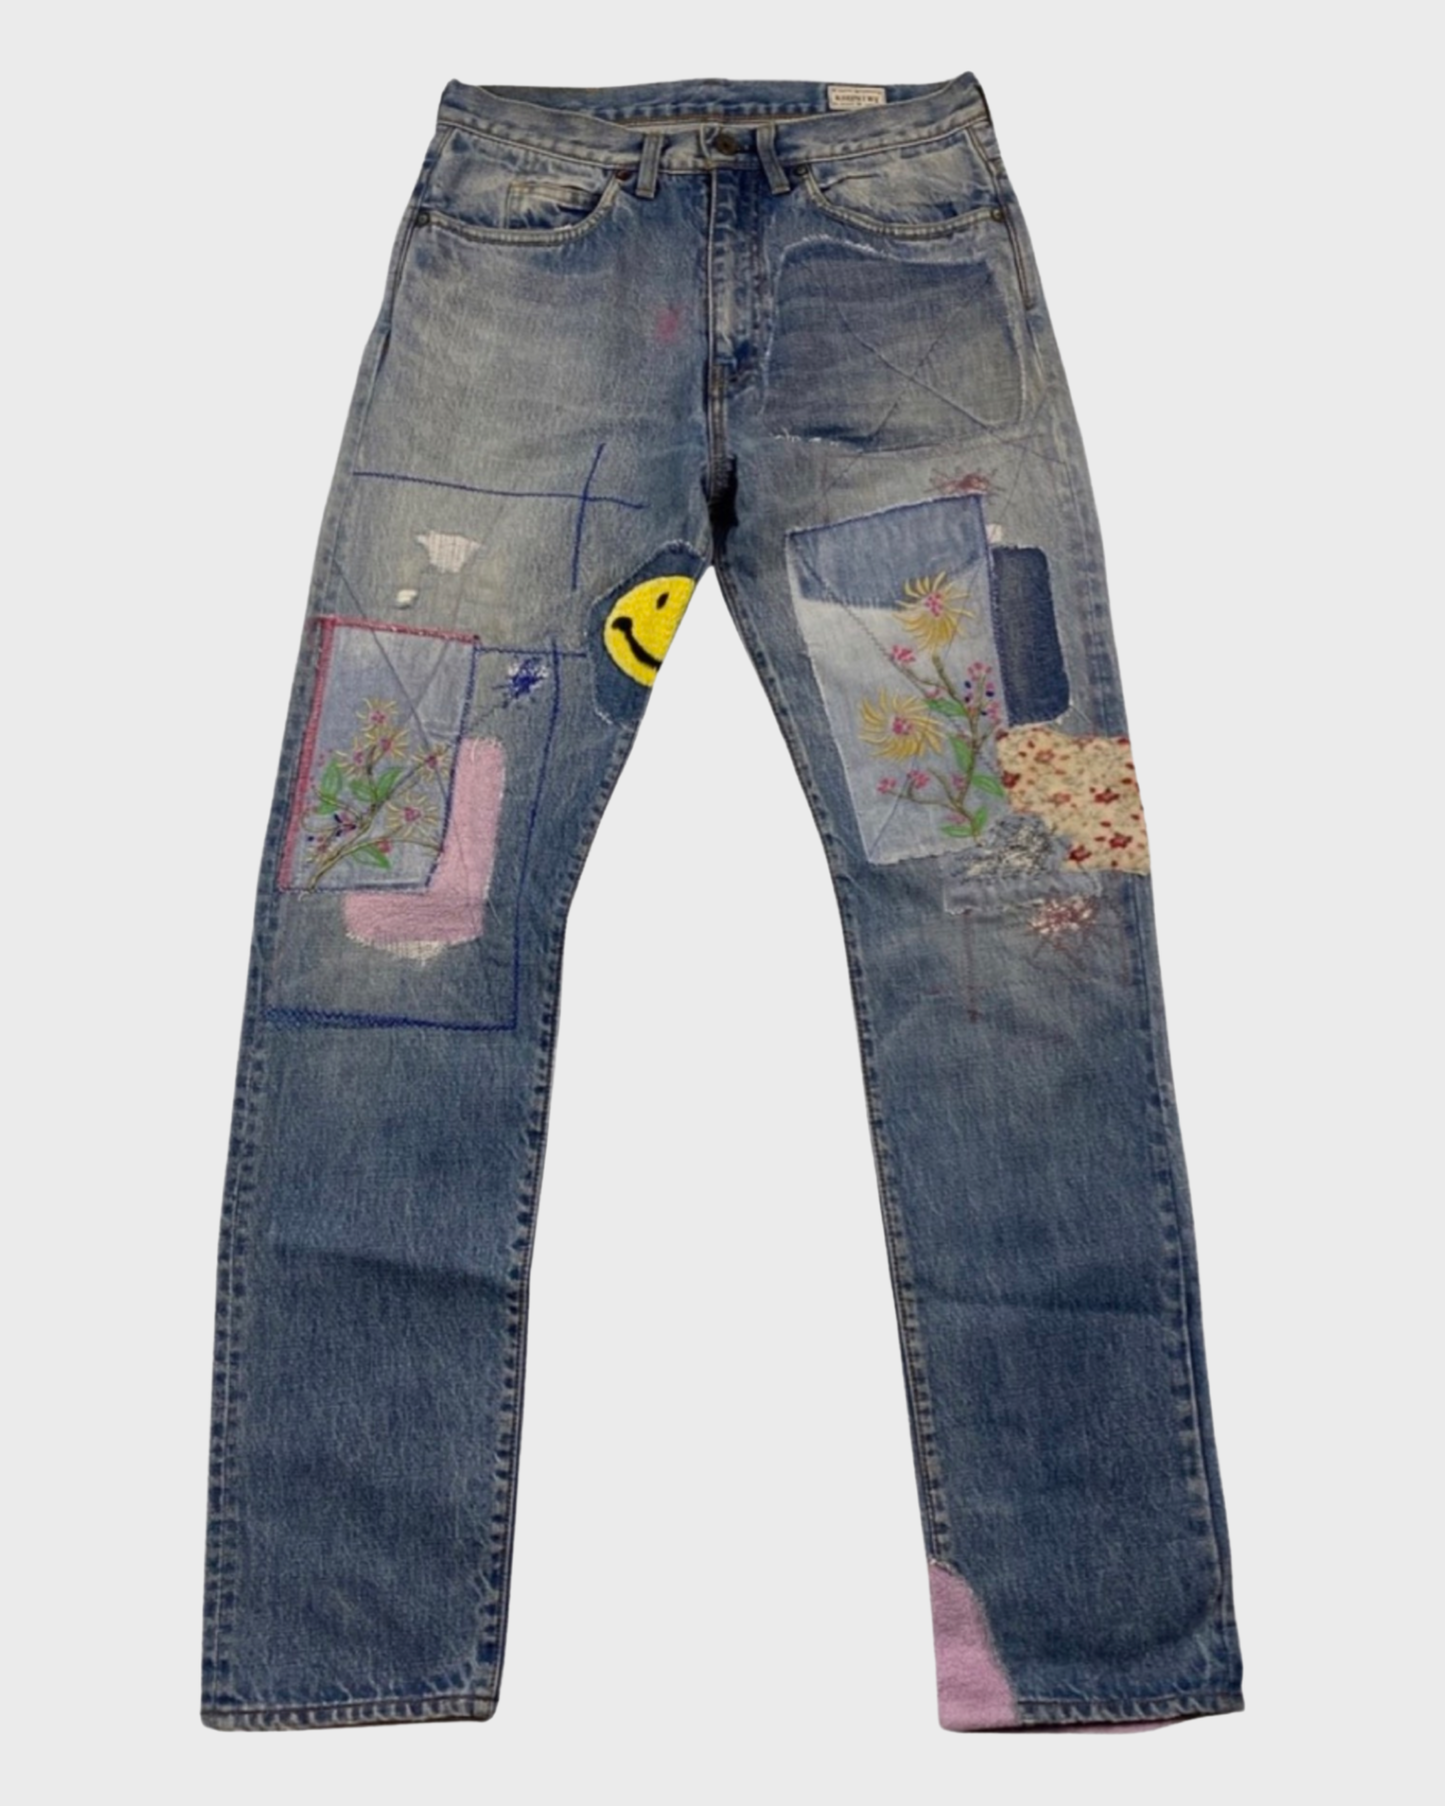 Kapital Okabilly 14OZ Smiley Patchwork patched jeans SZ:W32|36